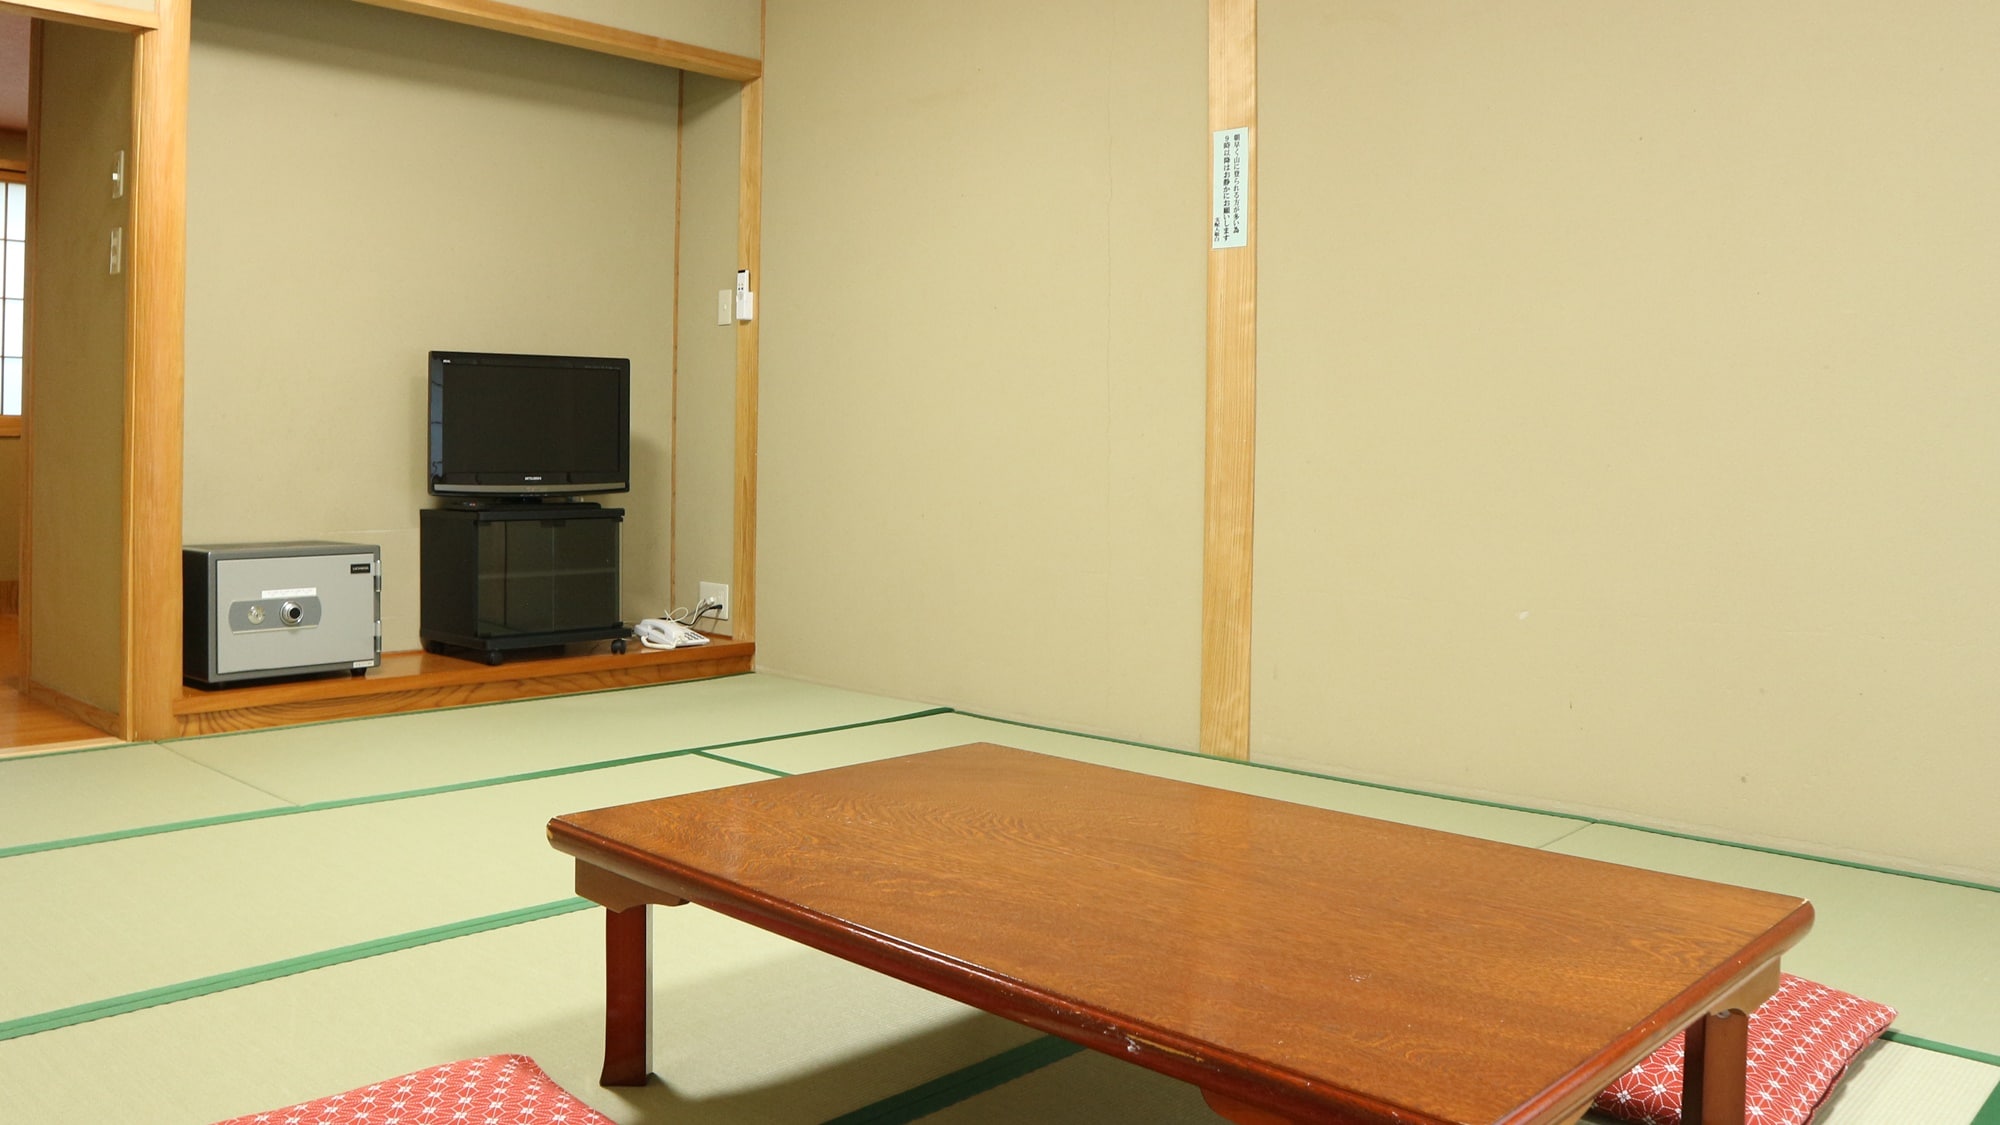 * ตัวอย่างห้องสไตล์ญี่ปุ่น / ขนาดจะเหลือตามจำนวนคน